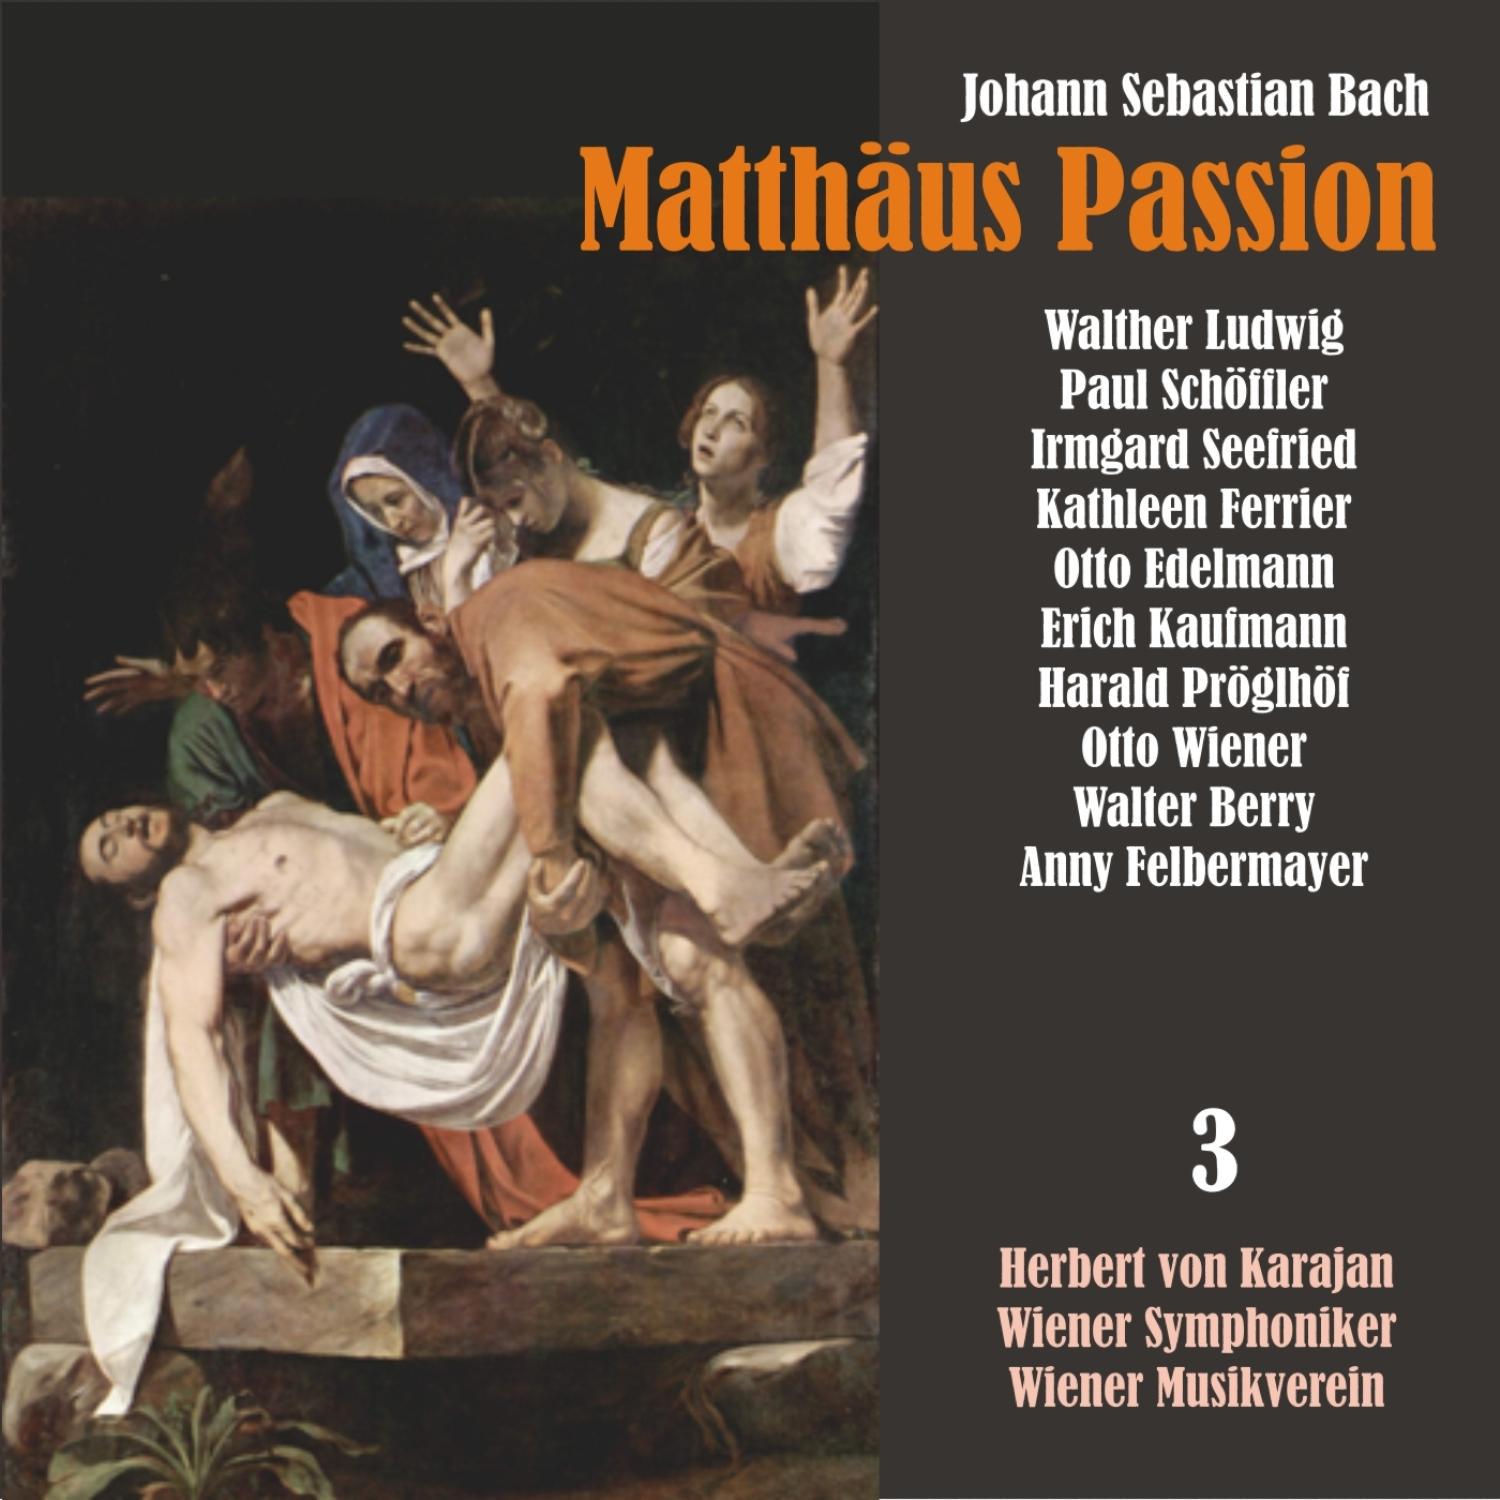 Matthäus Passion, BWV 244: "Und da sie an die Statte kamen" / "Andern hat er geh"